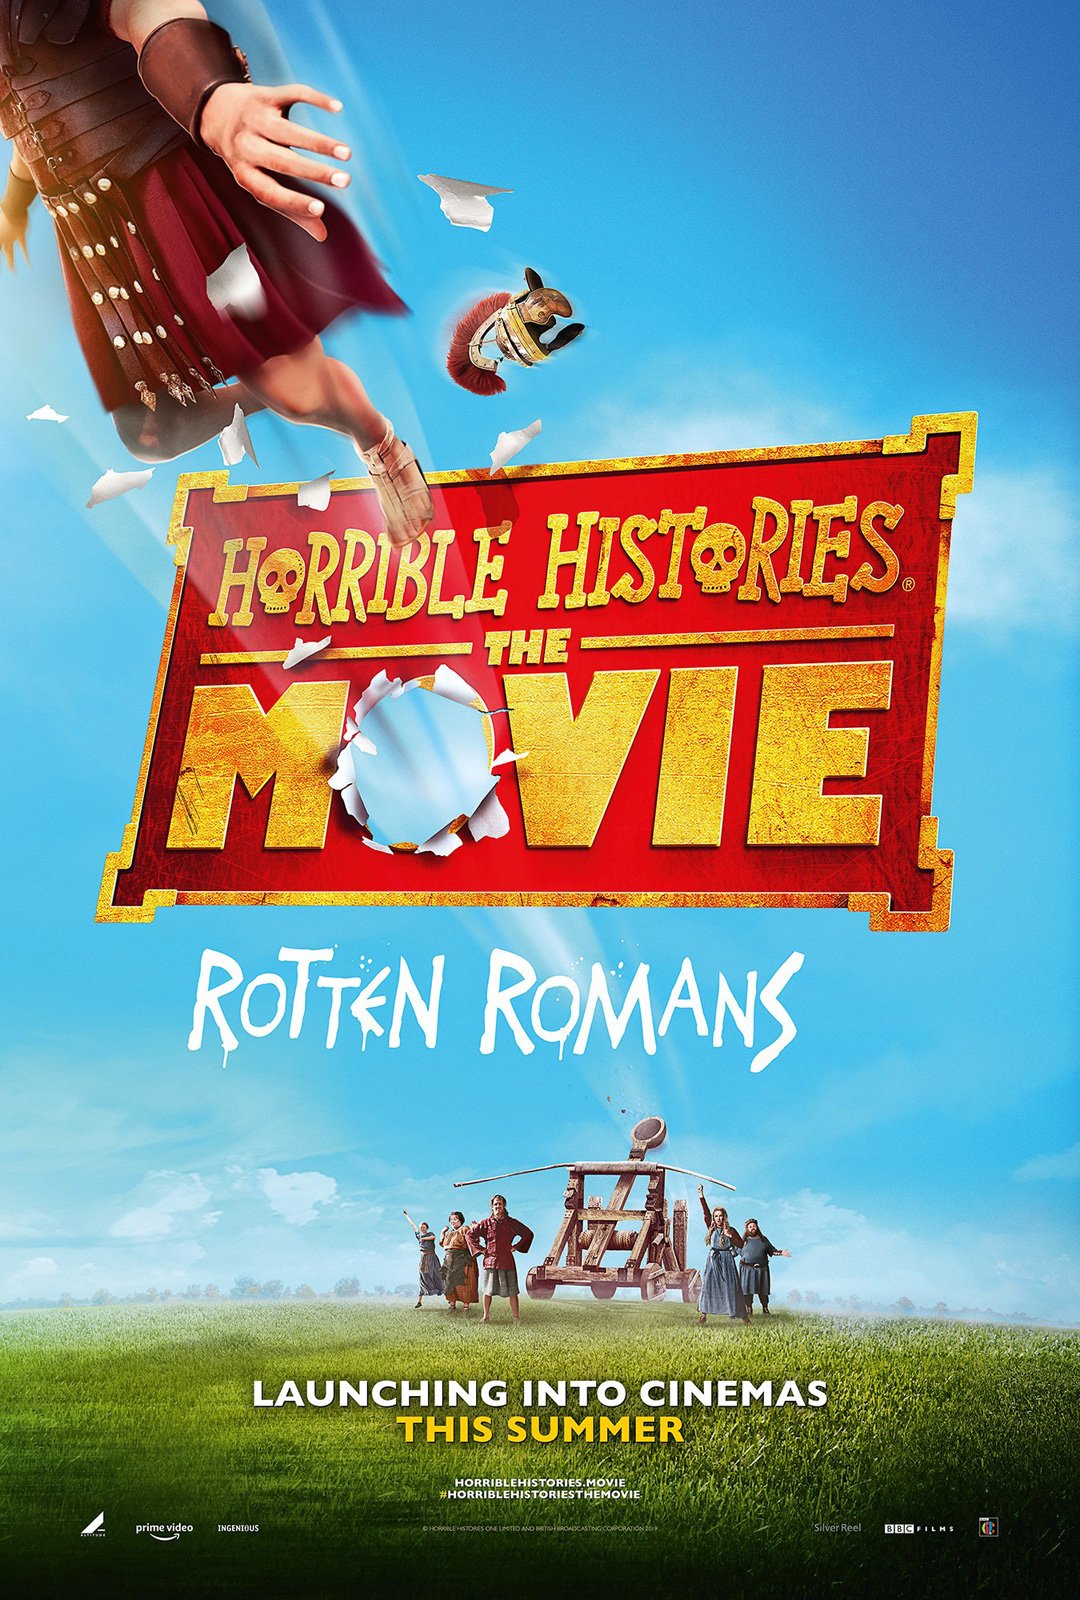 Horrible Histories: The Movie - Rotten Romans : Affiche